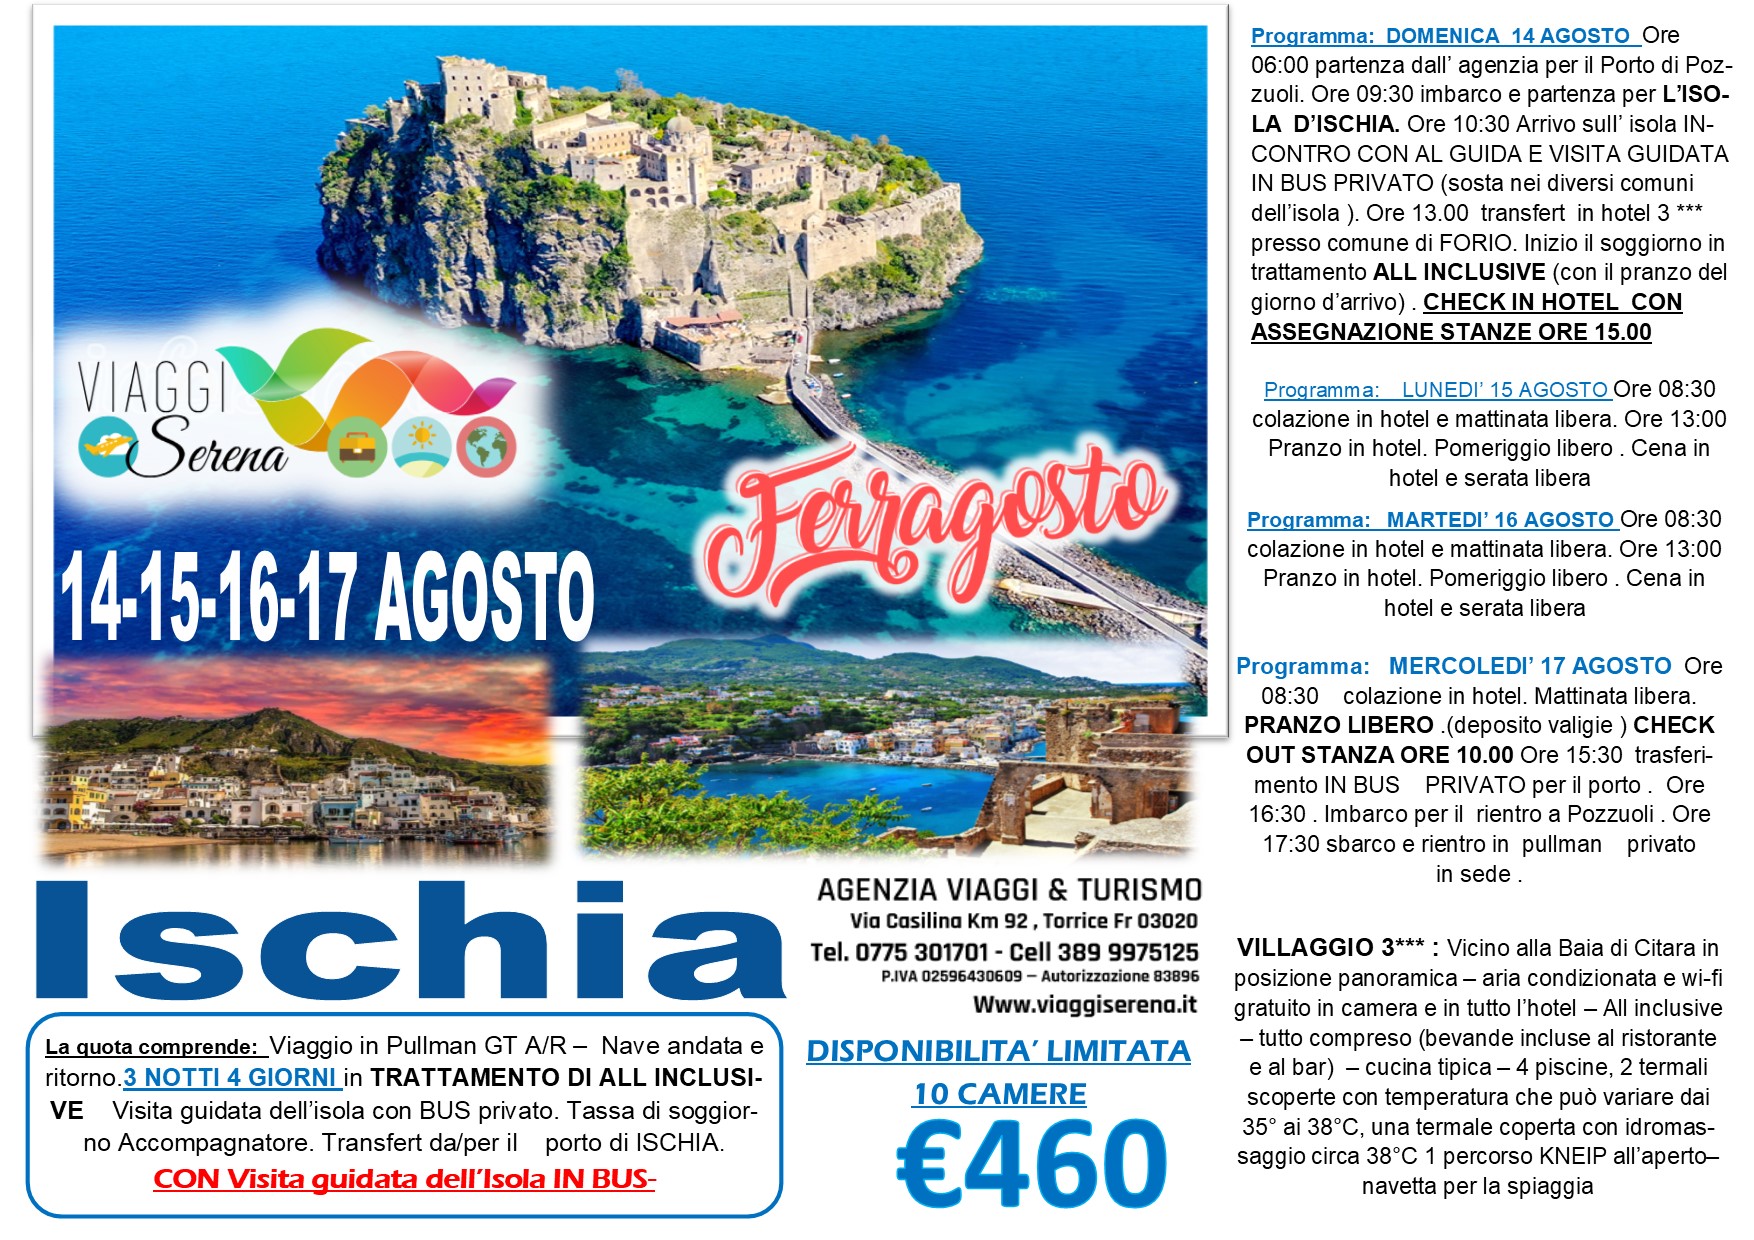 Viaggi di Gruppo: “Speciale Ferragosto” Isola d’ISCHIA 14-15-16-17 Agosto € 460,00